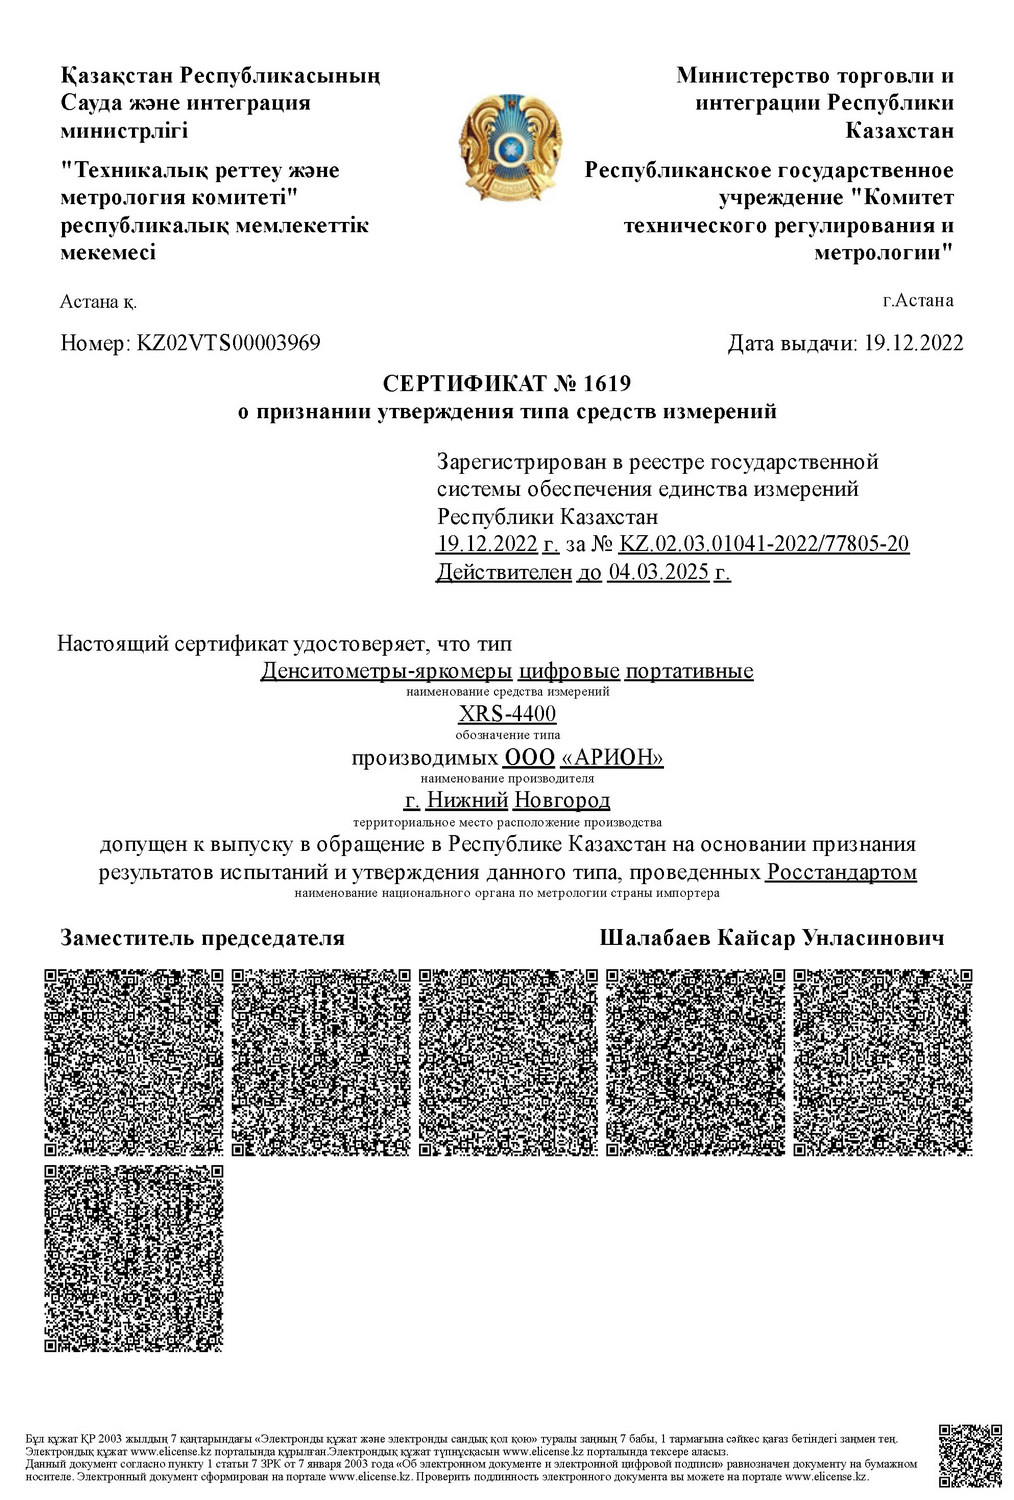 Регистрационный номер в Госреестре СИ Республики Казахстан — KZ.02.03.01041-2022/77805-20